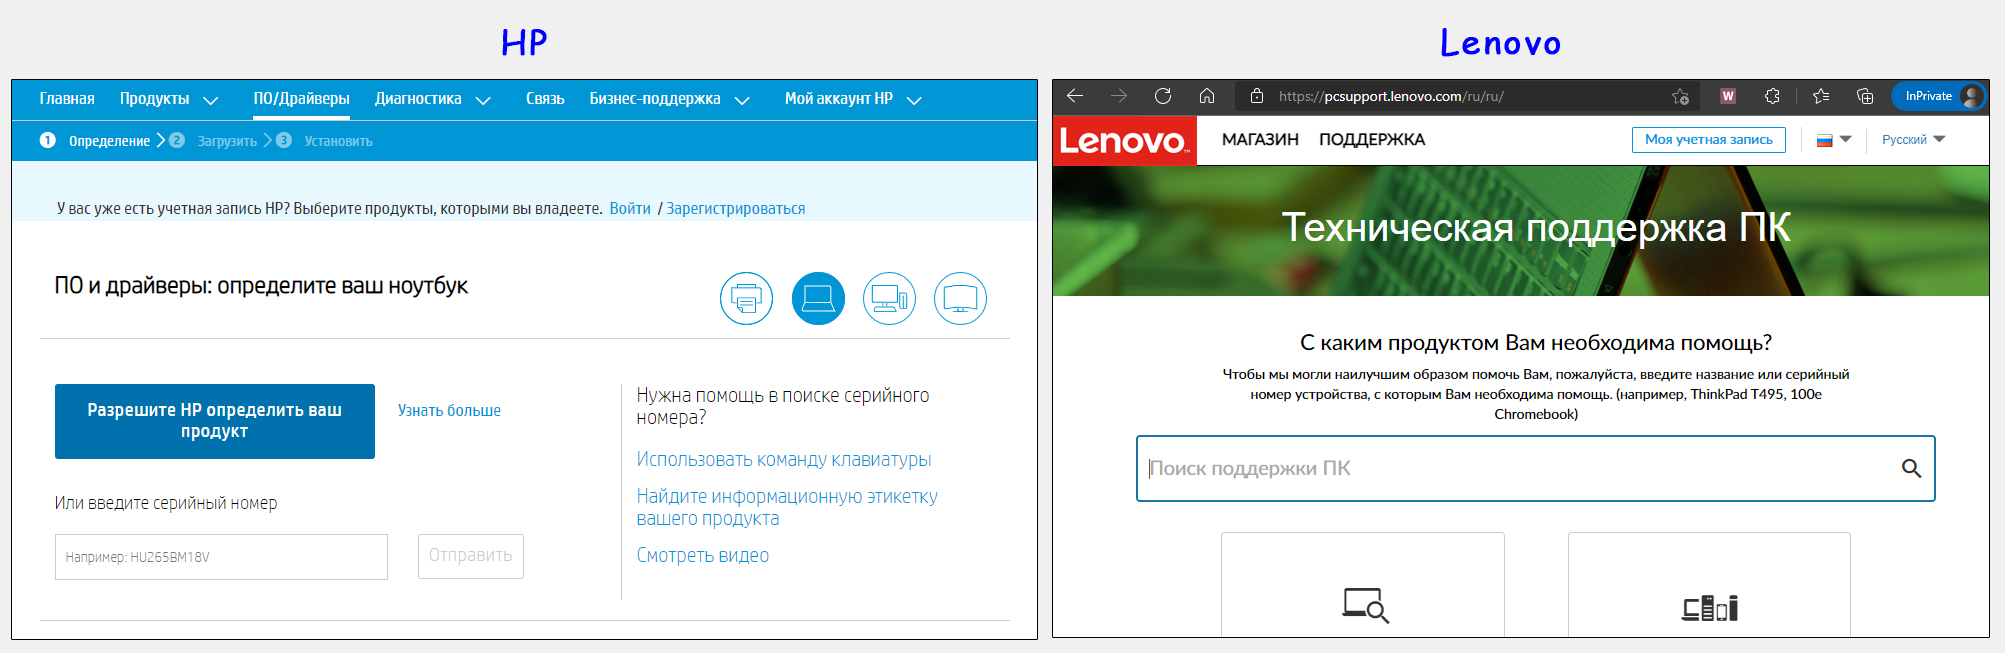 Примеры официальный сайтов HP и Lenovo со страницами для загрузки драйверов.